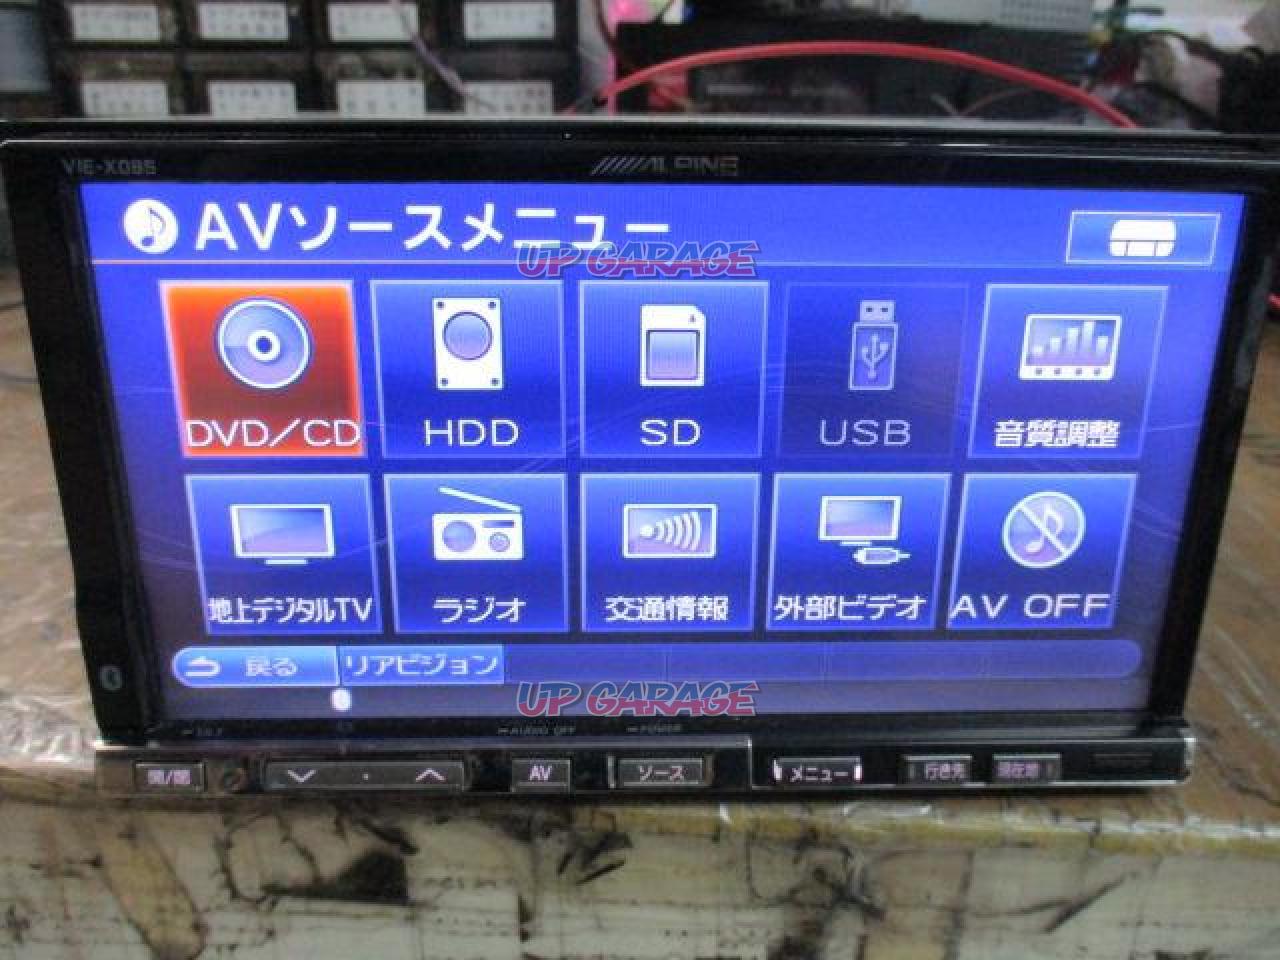 ALPINE VIE-X08S HDDナビ - 自動車